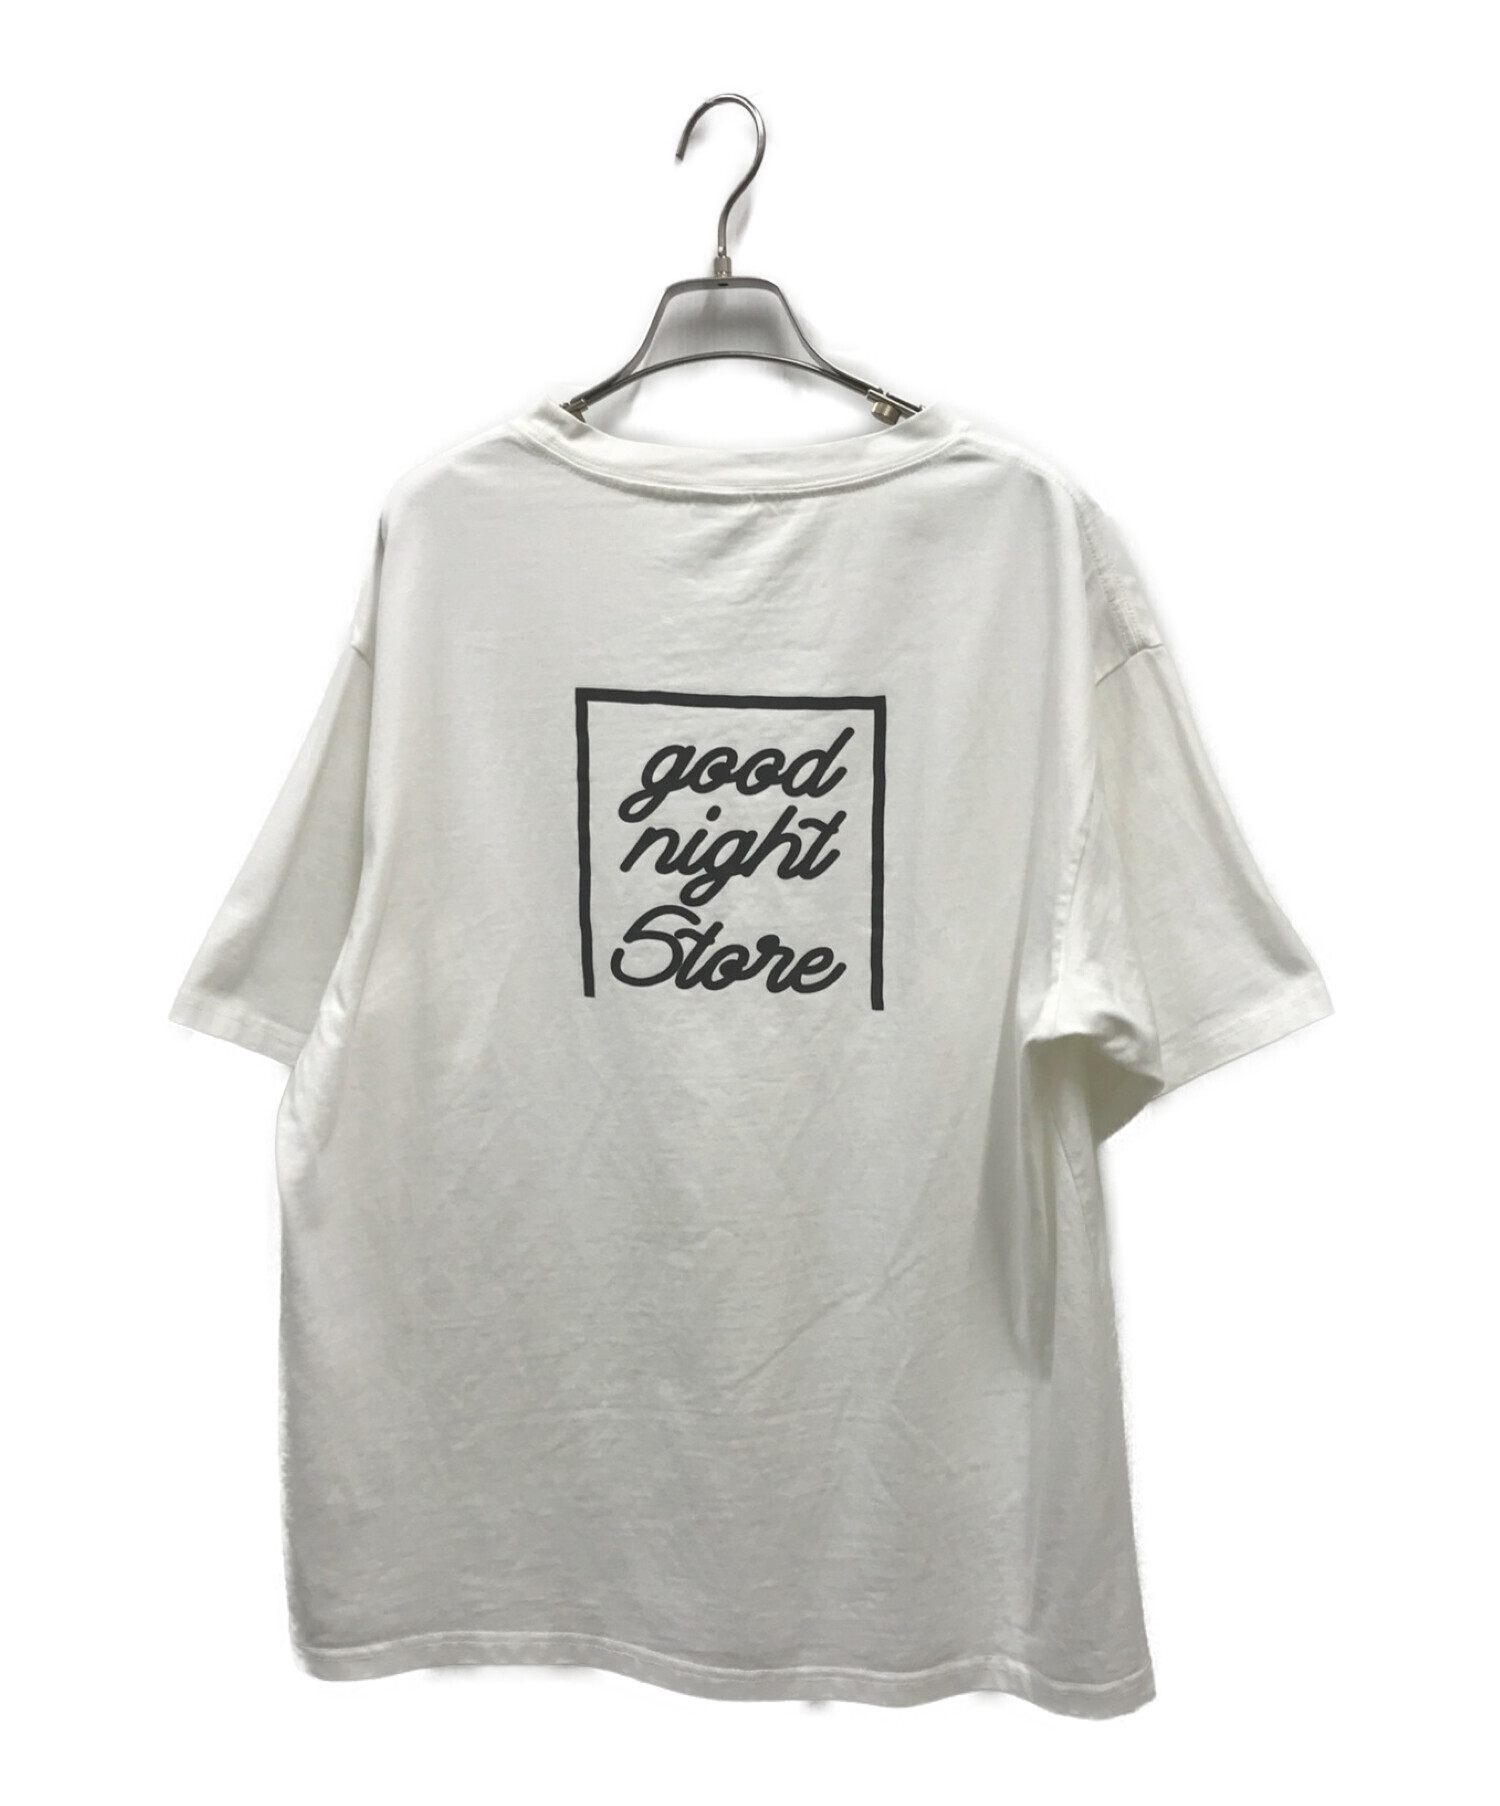 goodnight5tore (グッドナイトストア) プリントTシャツ ホワイト サイズ:FREE